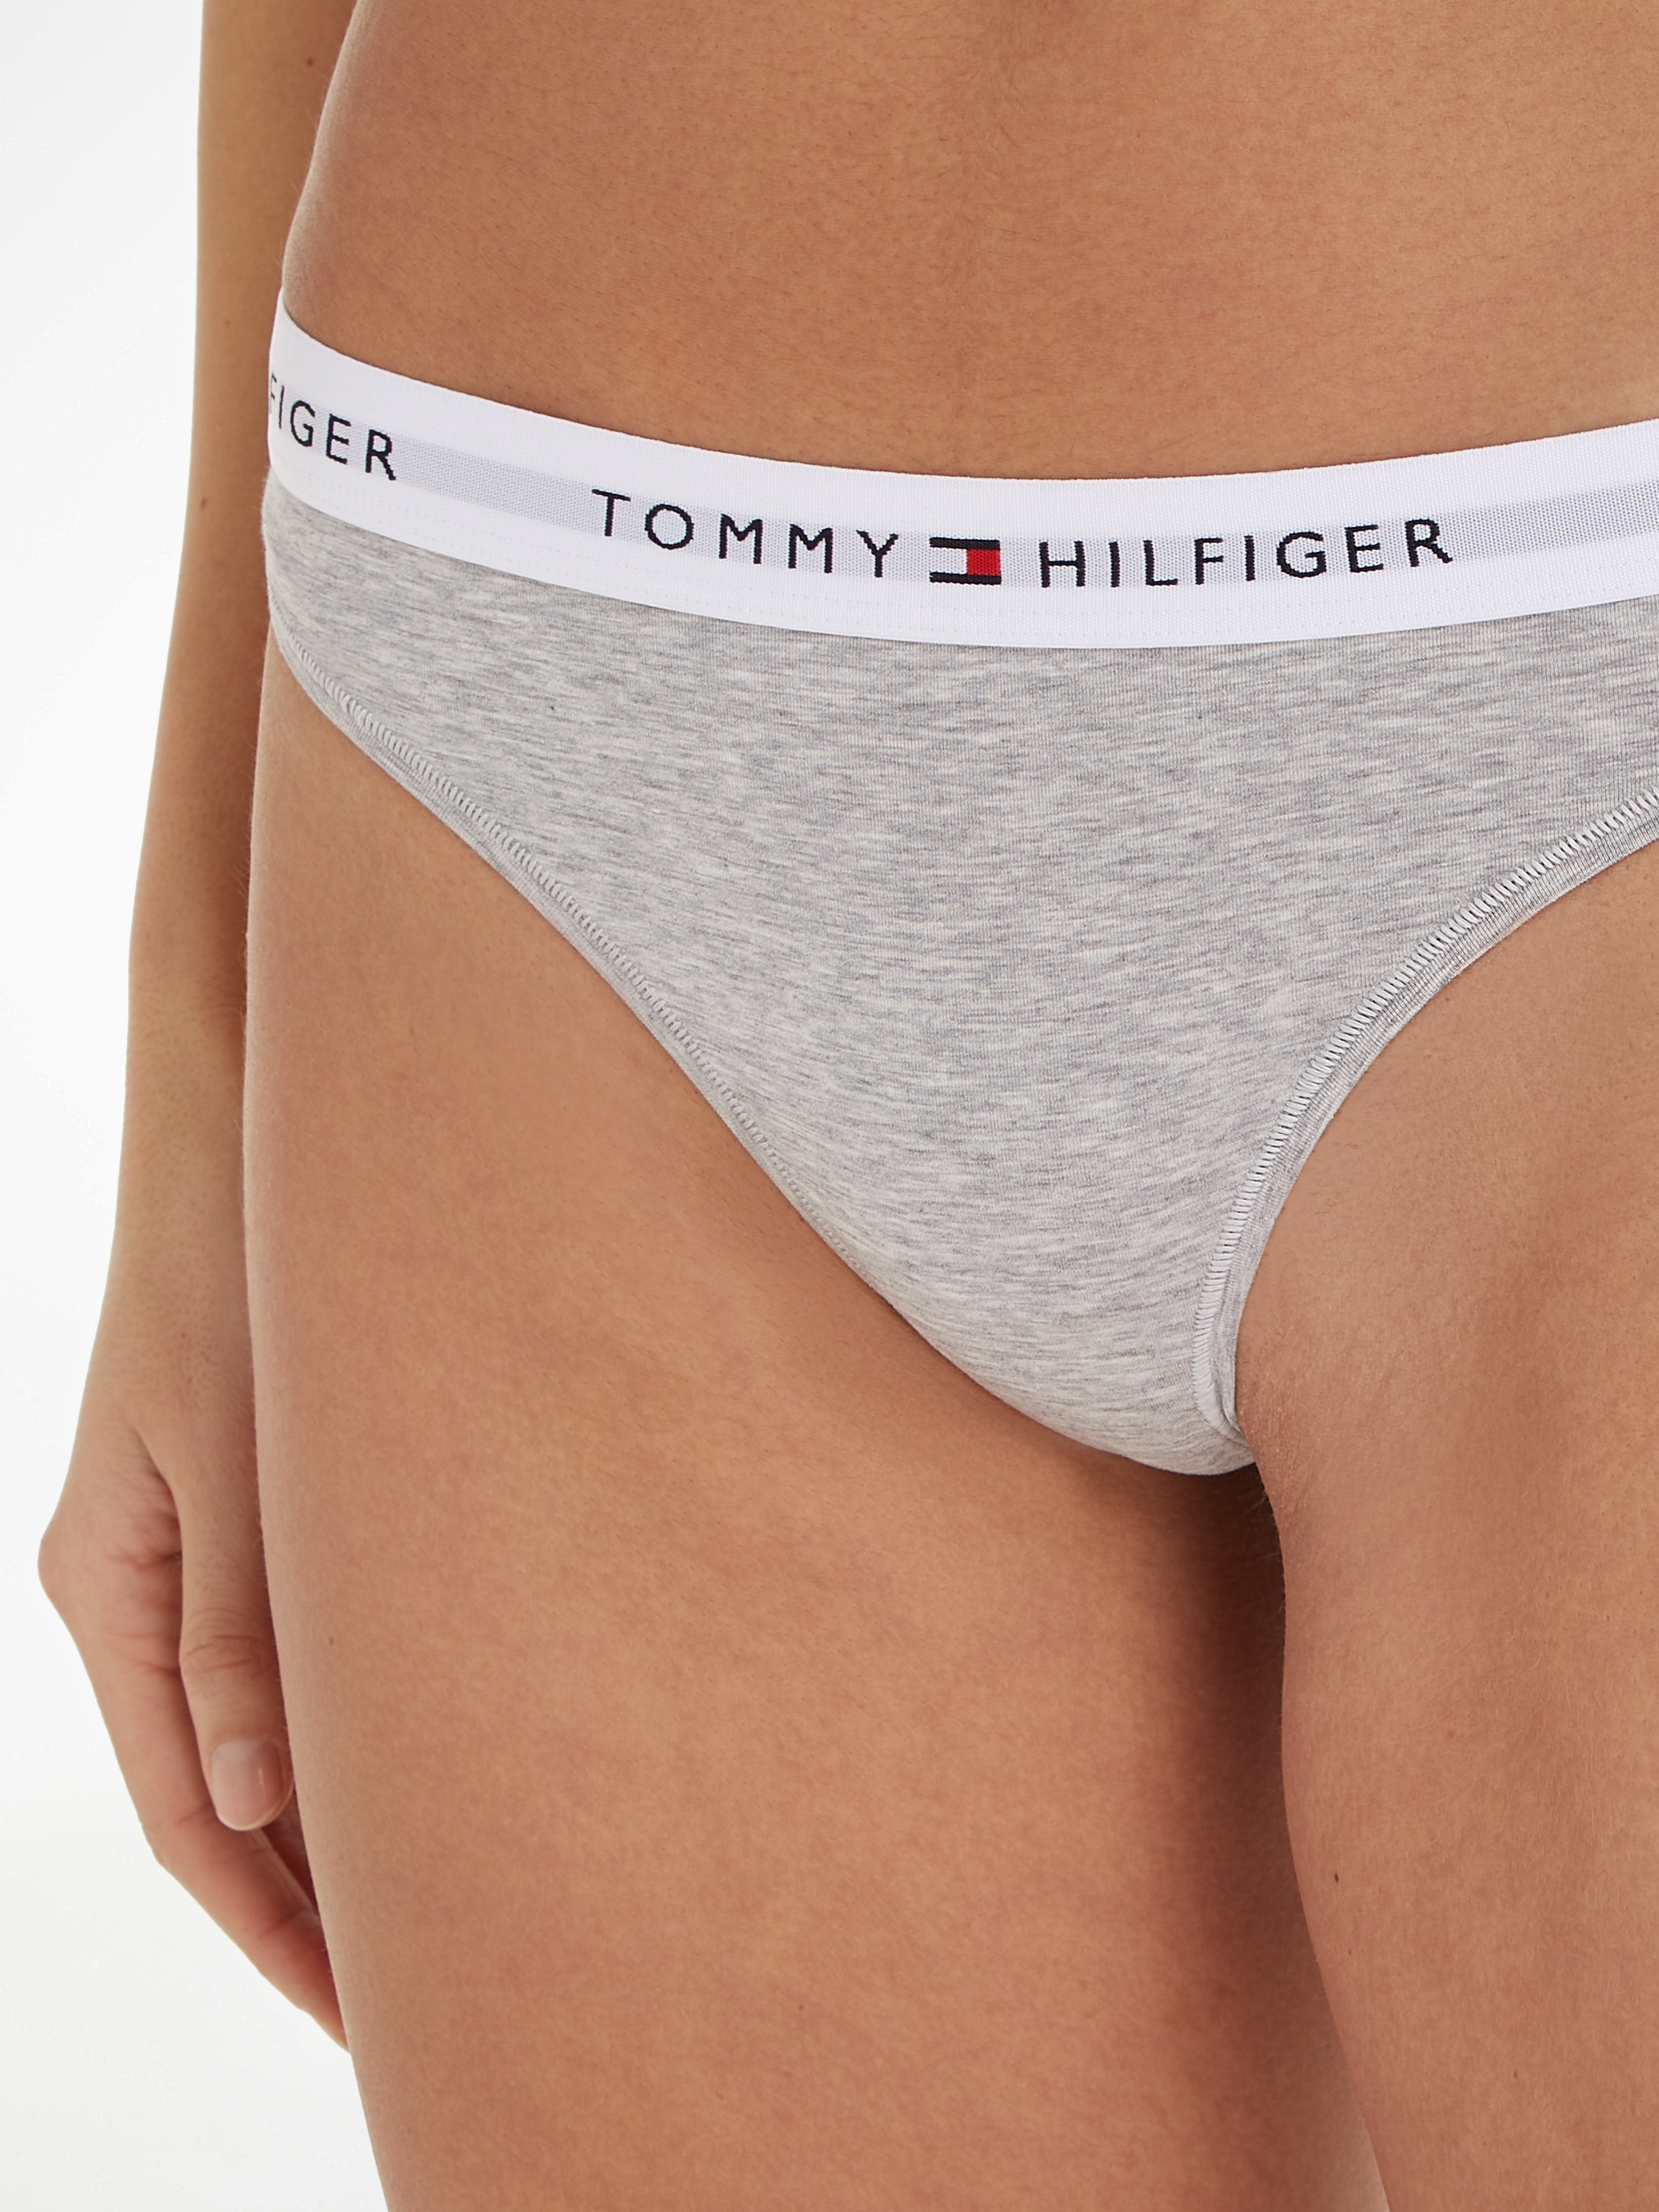 Logo Hilfiger auf T-String, mit kaufen OTTO Tommy dem bei Taillenbund Underwear